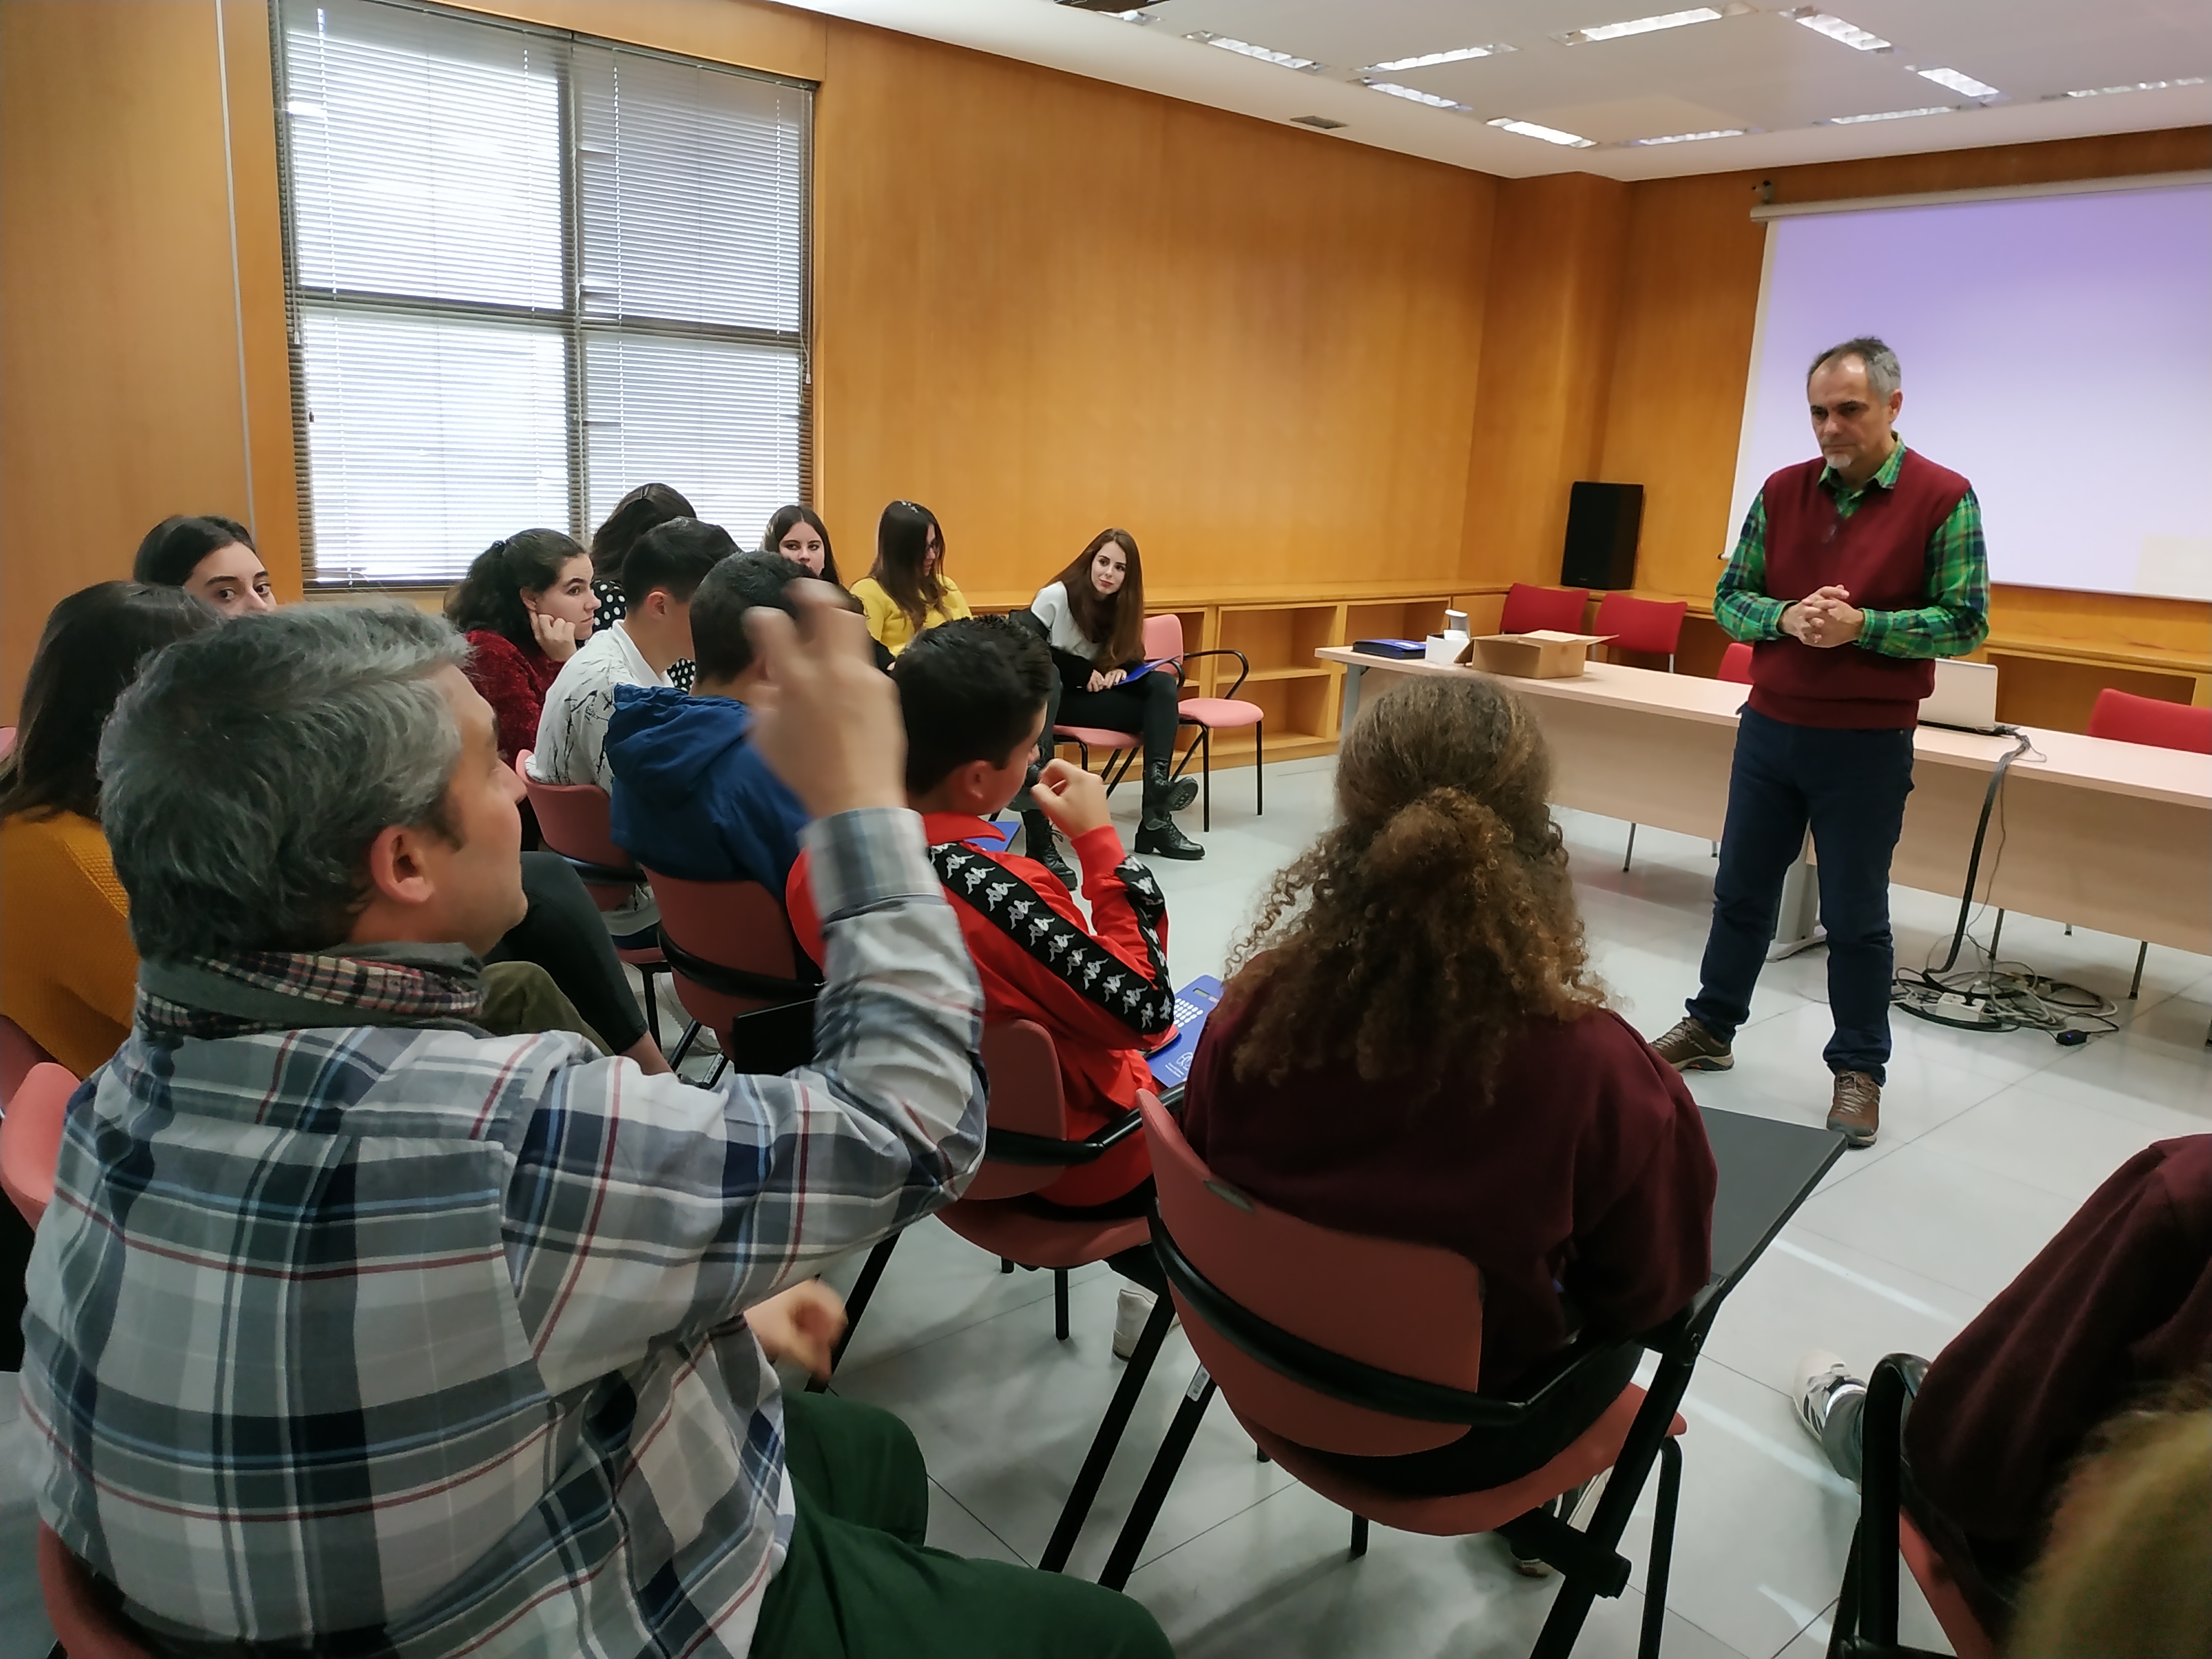 "La visita ha sido de diez, seguro que repetimos", David Ruiz, profesor del Bachillerato de Excelencia IES Alonso de Berruguete (Palencia) que ha visitado el CCHS con sus alumnos